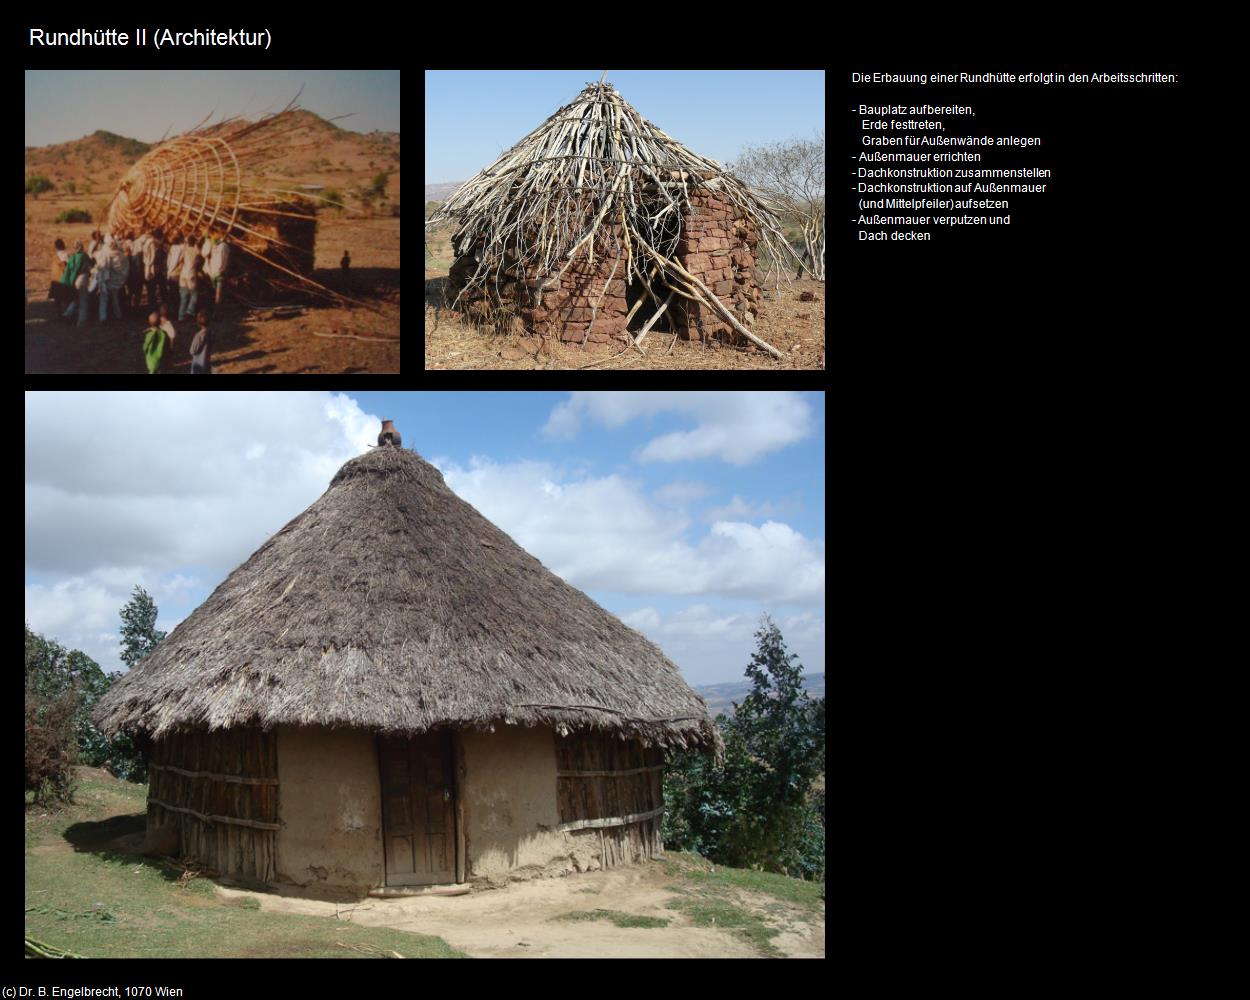 Rundhütte II (+Architektur) in Äthiopien